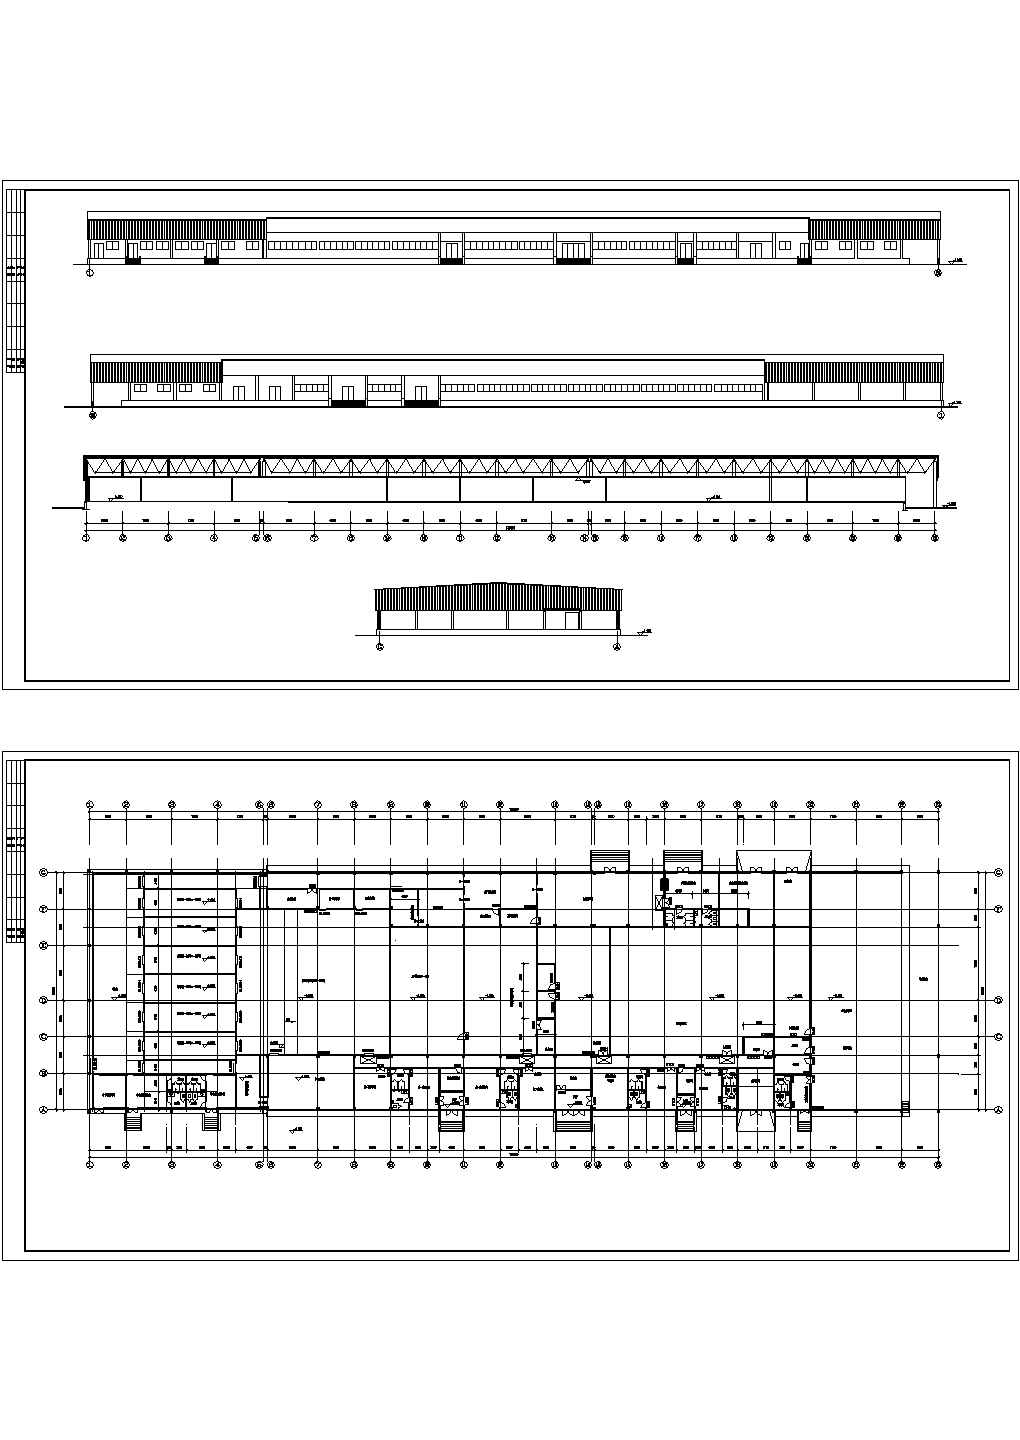 1层食品厂房建筑方案设计CAD图